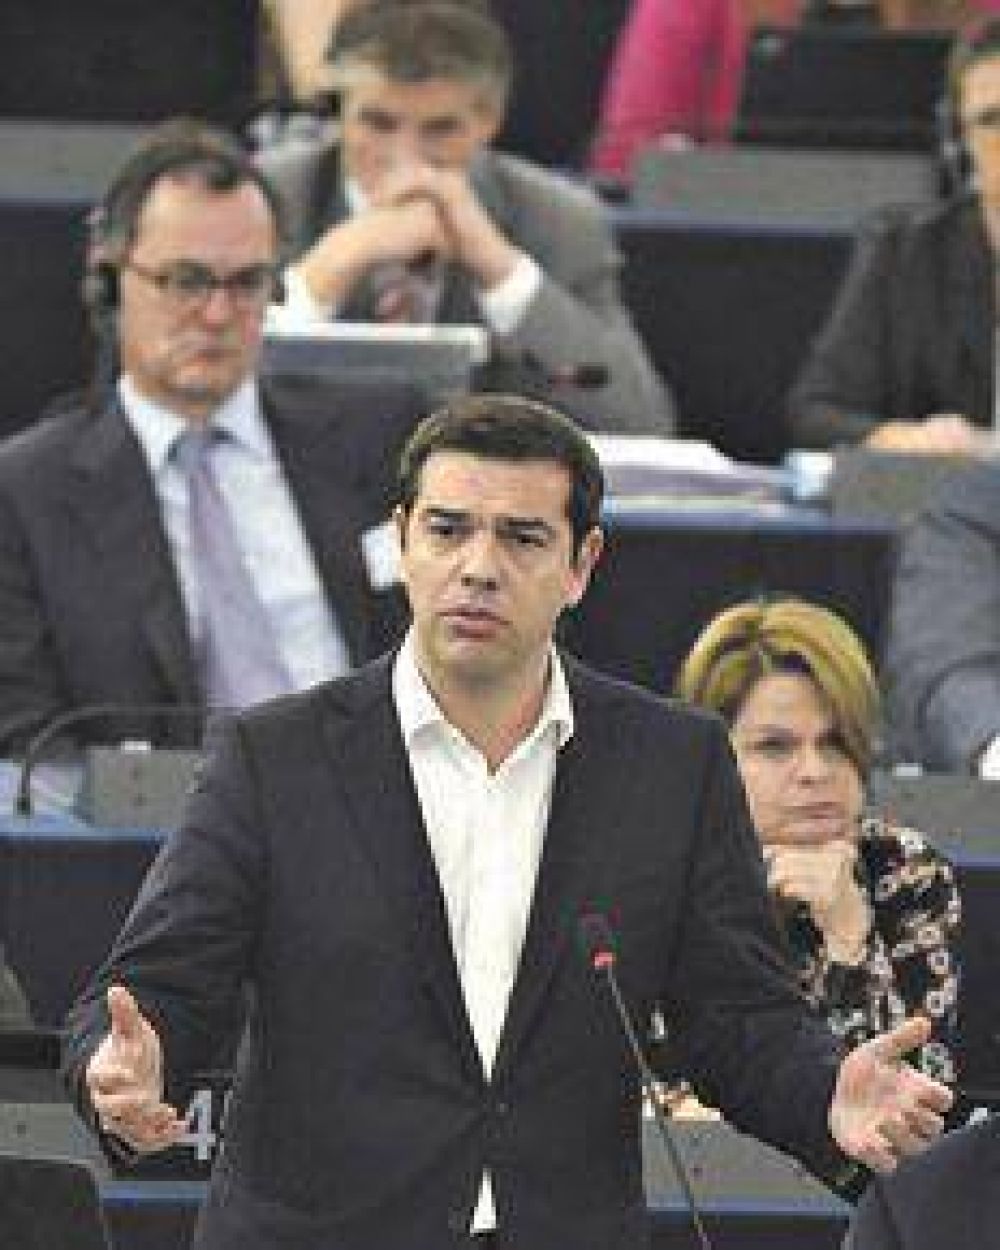 Grecia pidi un nuevo rescate a la Unin Europea